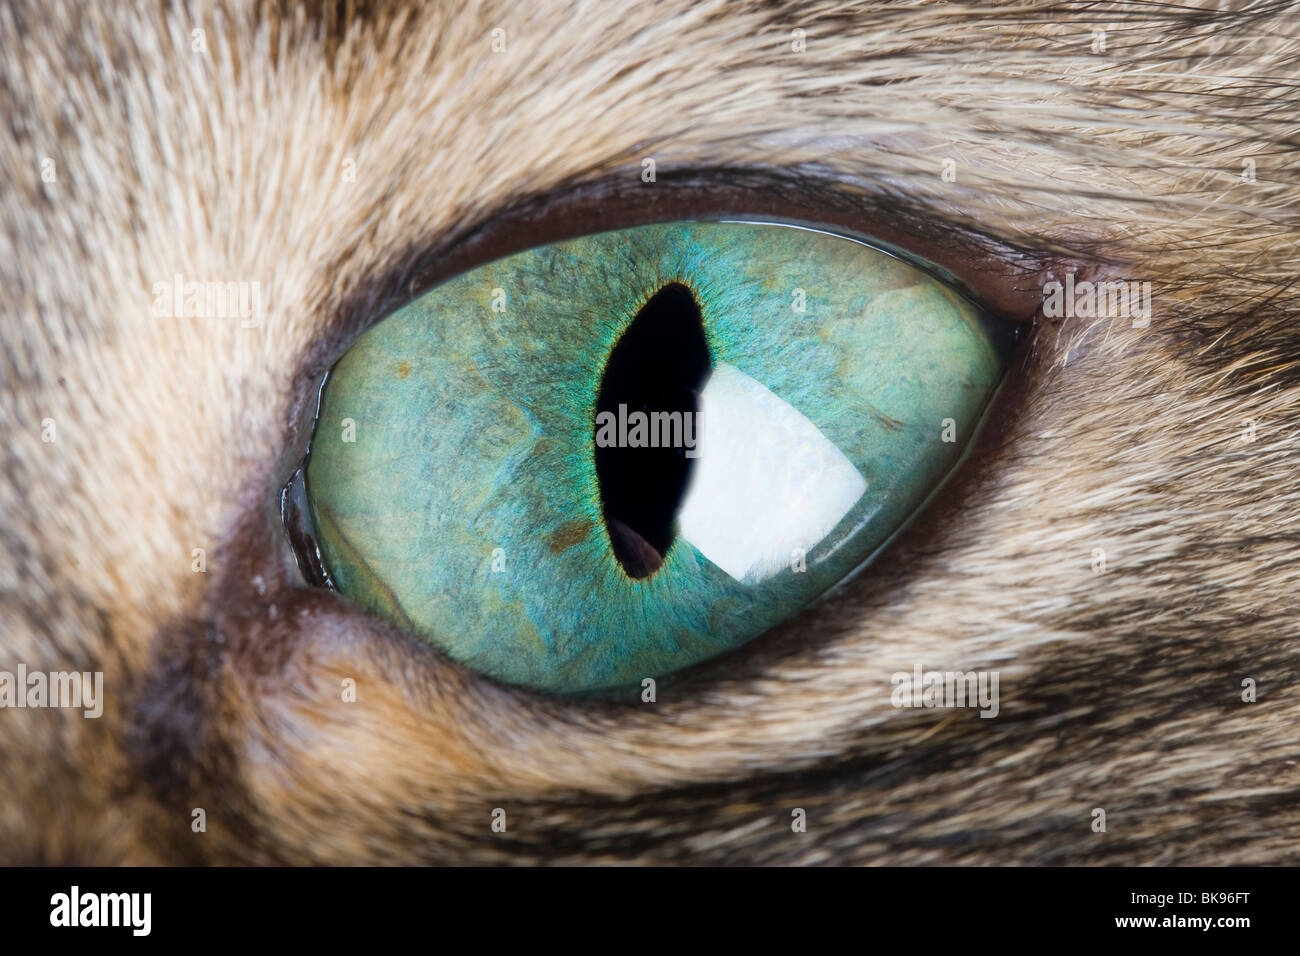 https://c8.alamy.com/compde/bk96ft/cat-eye-makro-eine-nahaufnahme-von-einem-katzenauge-zeigt-die-vertikale-pupille-und-schone-grune-iris-bk96ft.jpg